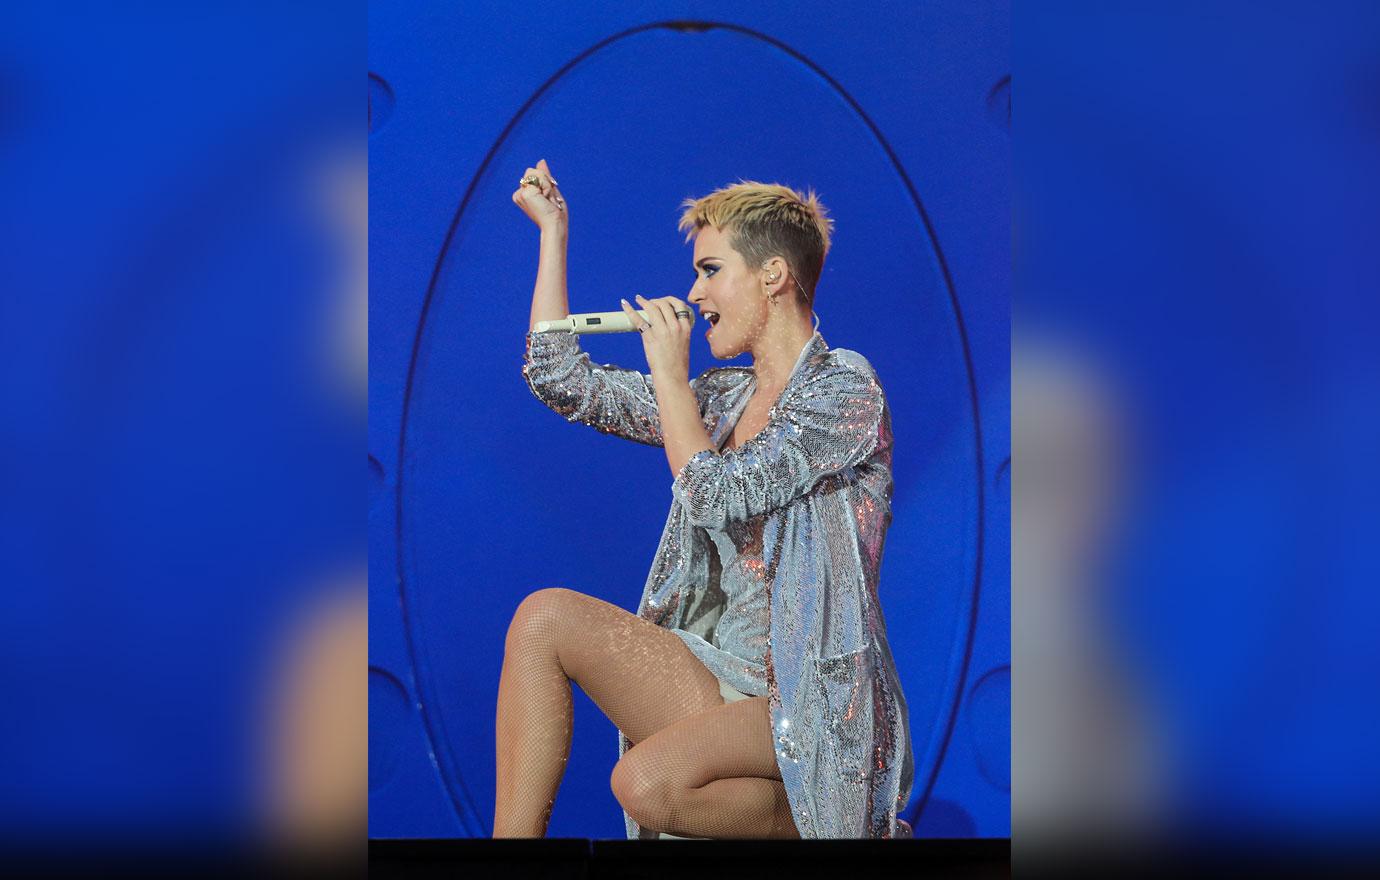 Pantylines & Yogapants on X: Katy Perry's pantylines #yogapants